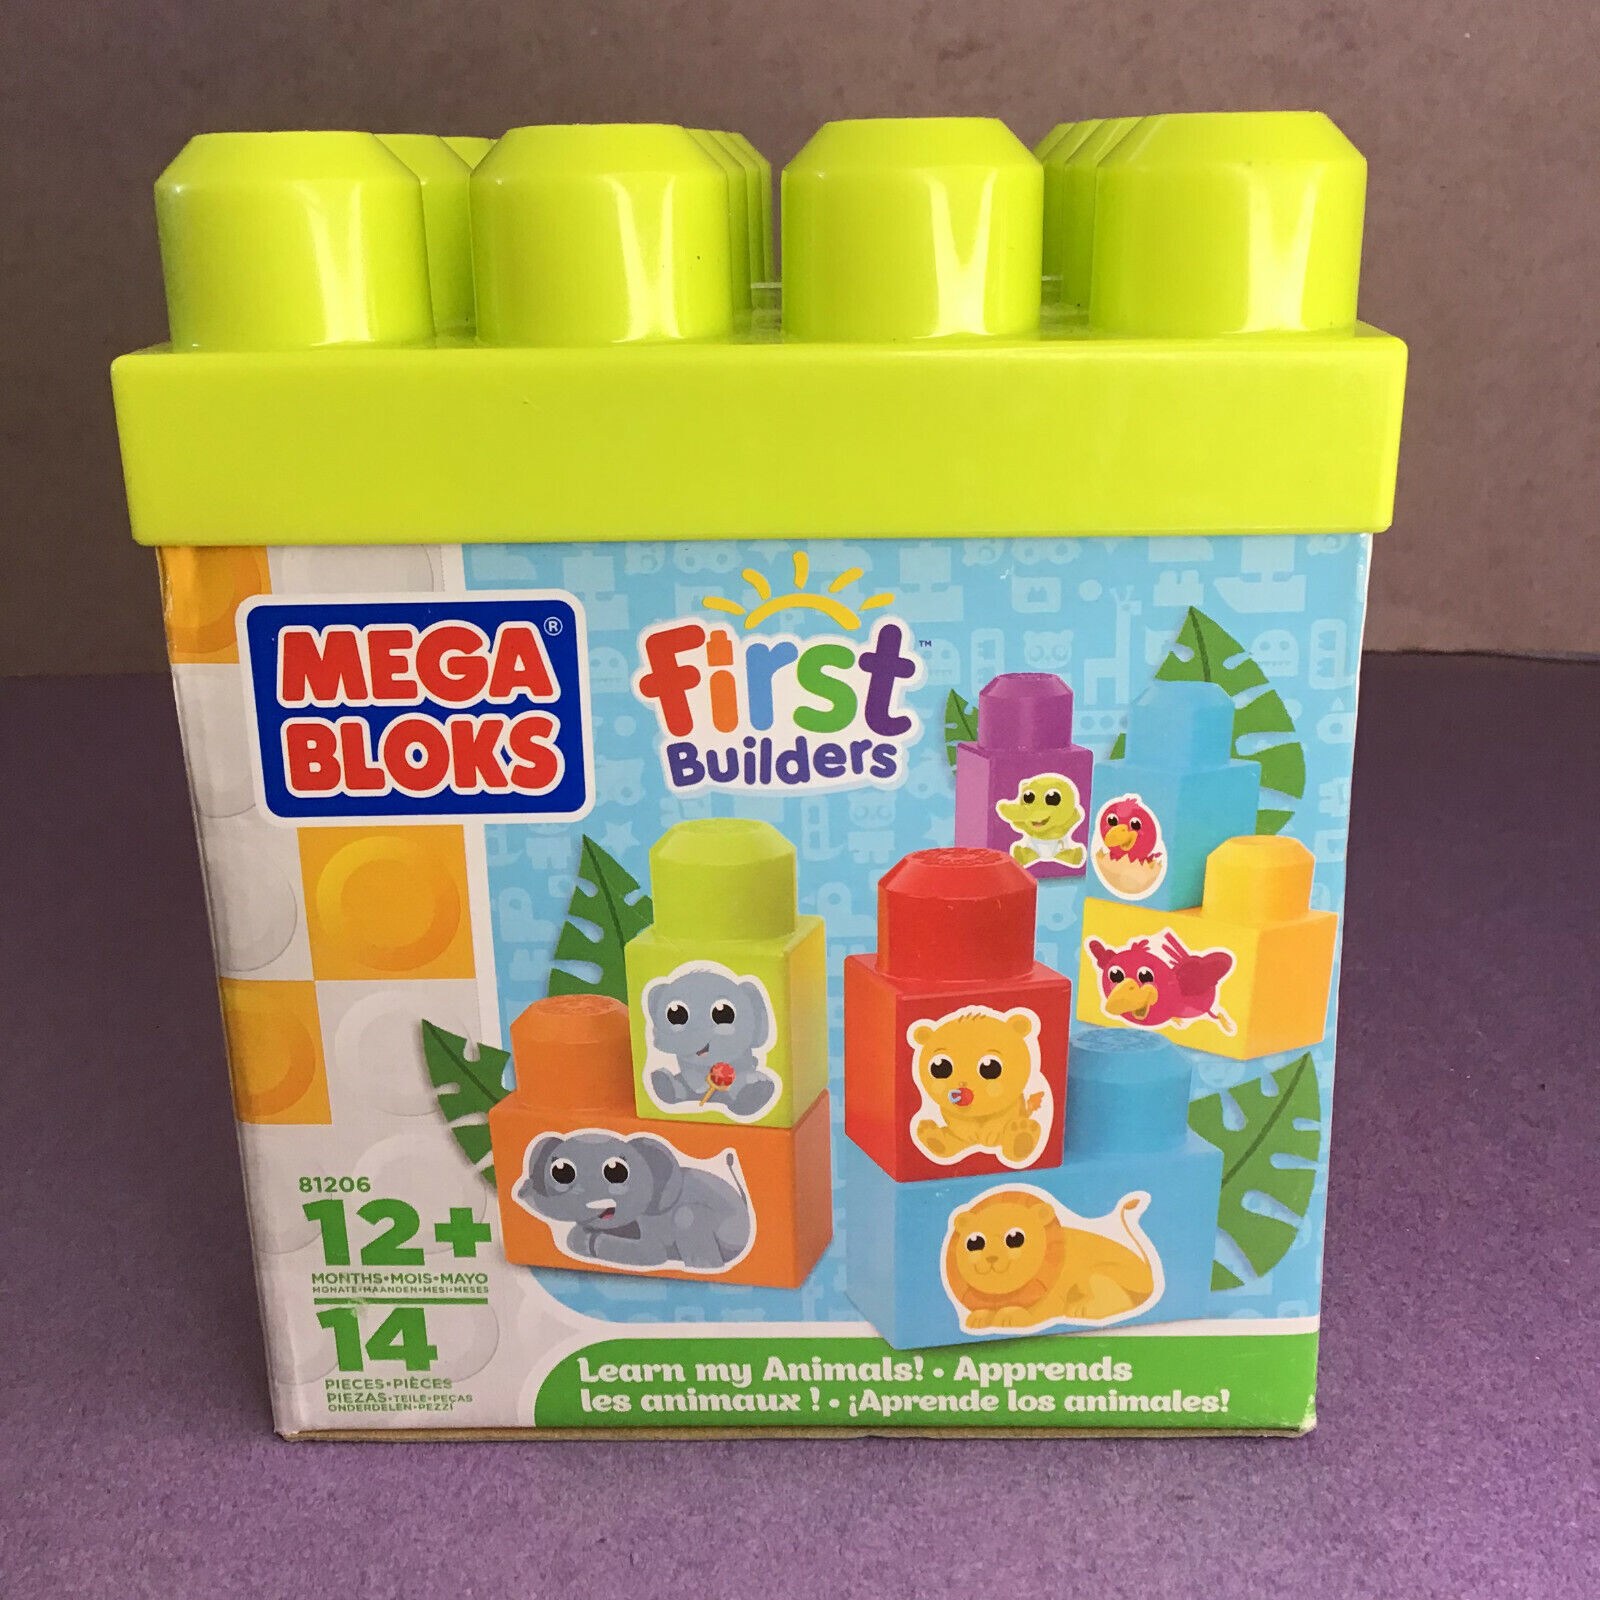 Learn My Animals Mega Bloks First Builder 12+ Months 14 Pieces #81206  65541812062 | eBay